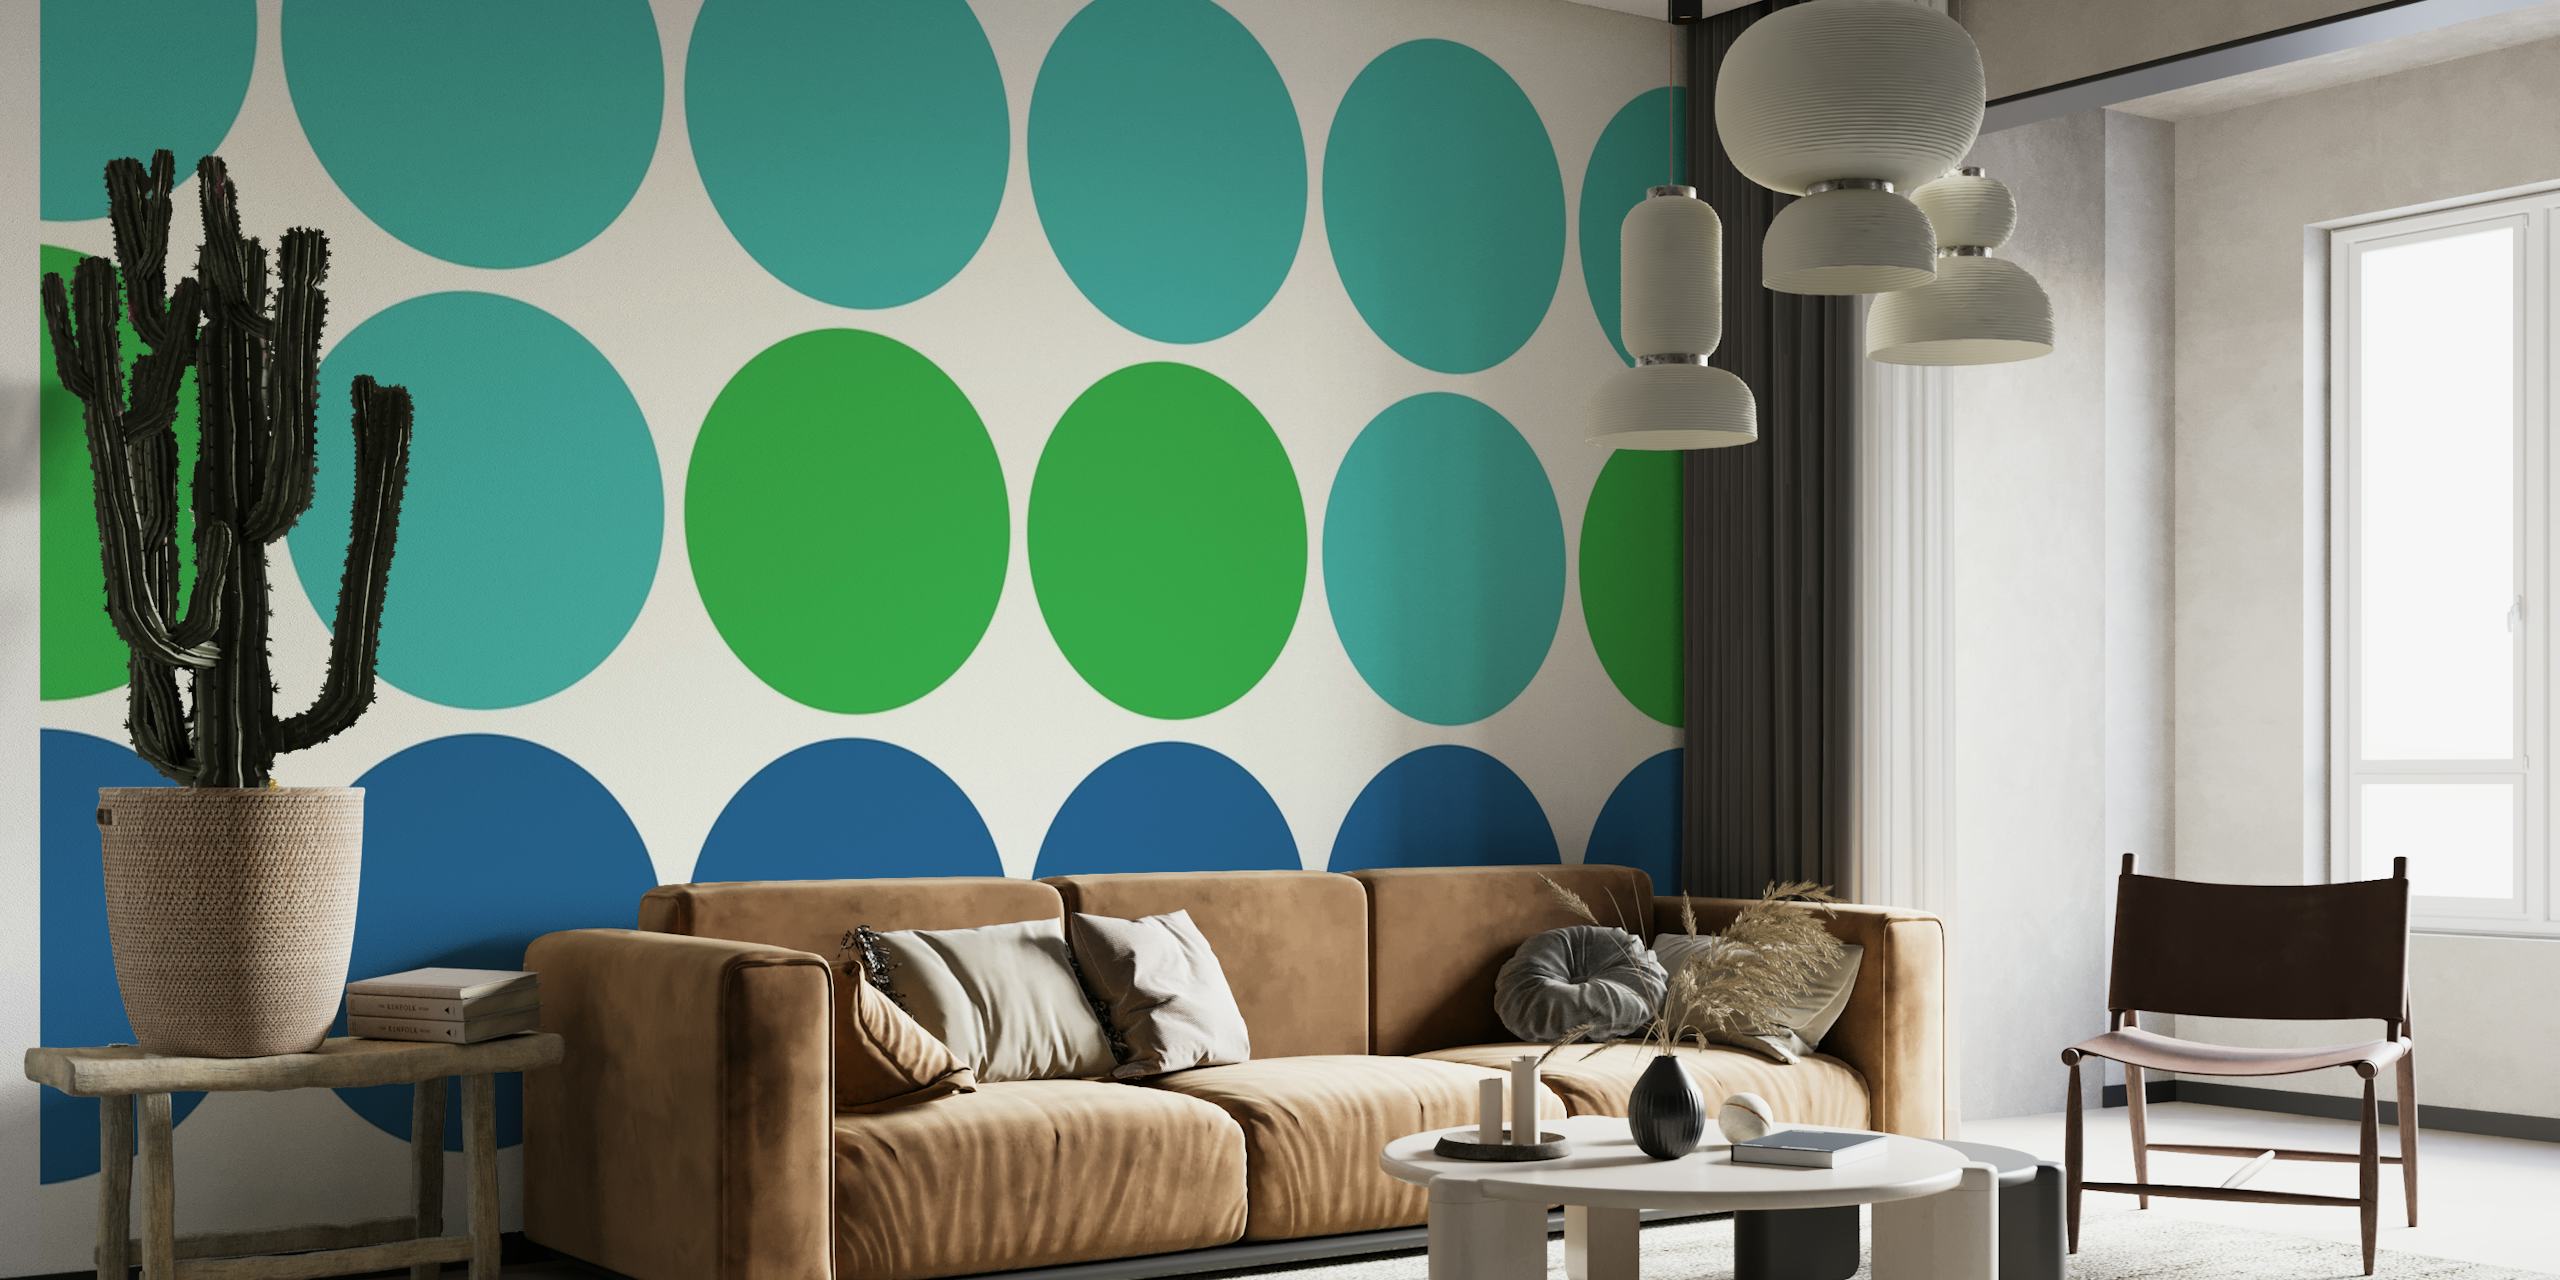 Vægmaleri med geometrisk cirkelmønster i nuancer af turkis, marineblå og grøn